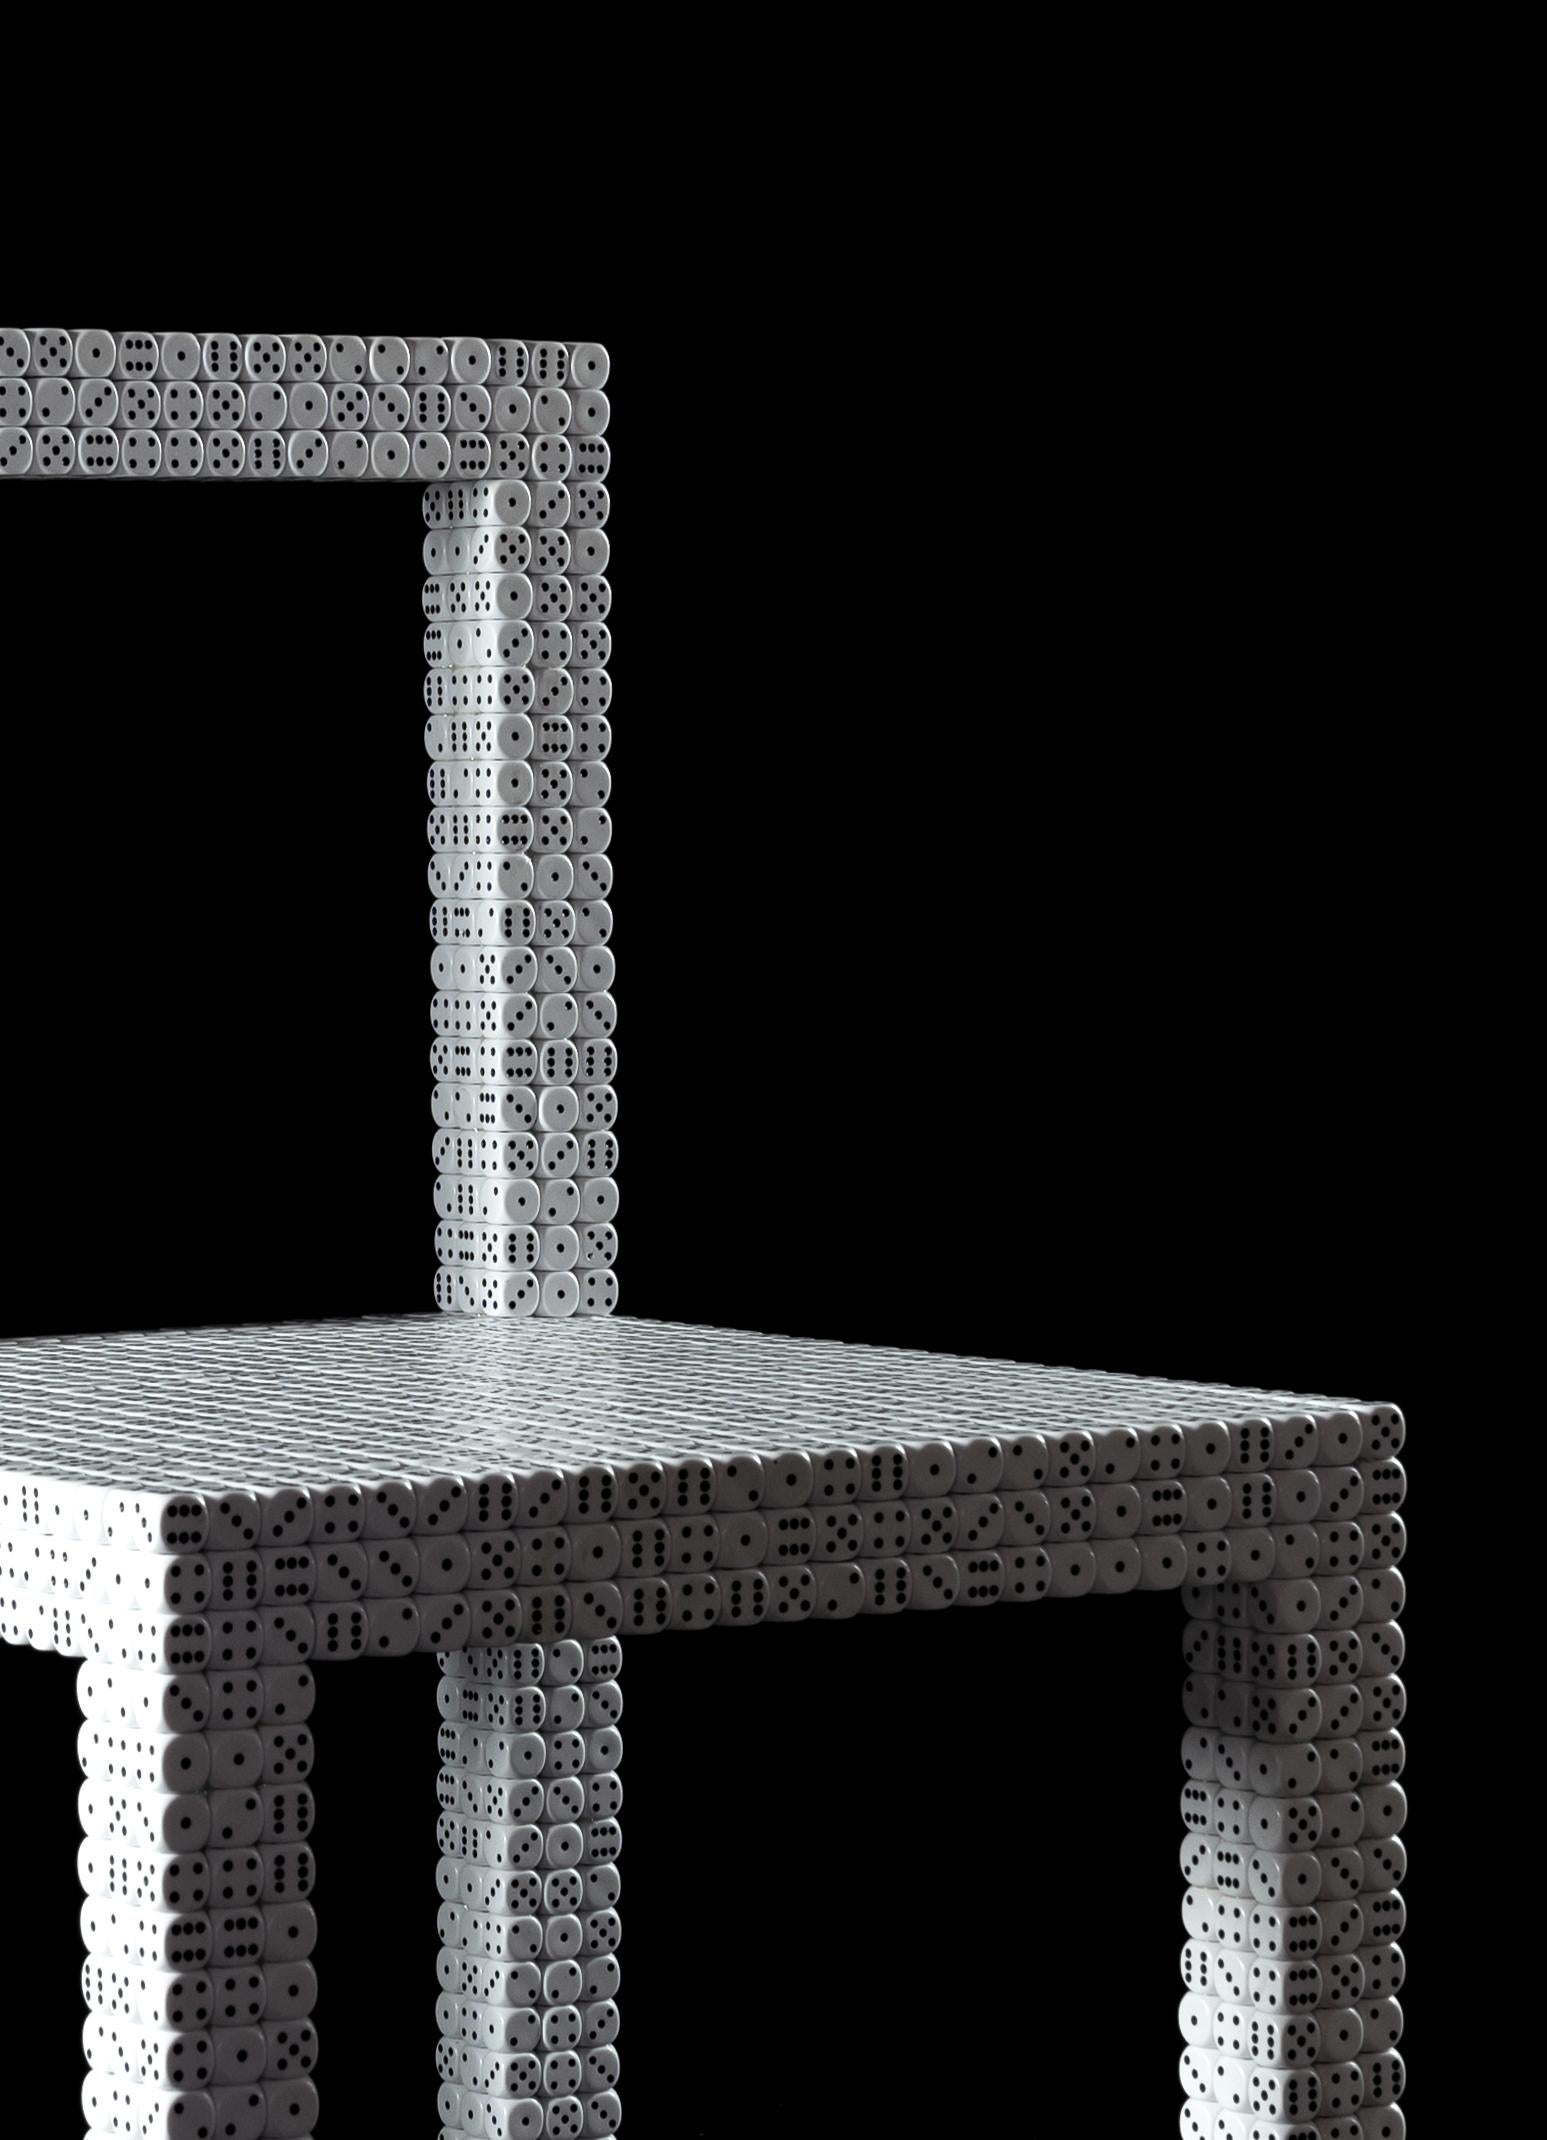 Die 'Dice'-Stühle sind reine Poesie, sie stehen für das Spiel und die Freiheit der Schöpfung. Die Collection'S besteht aus zwei einzigartigen Stühlen, die aus einer Metallrohrstruktur mit einer Bespannung aus 3.527 Würfeln mit den Maßen 16 x 16 mm